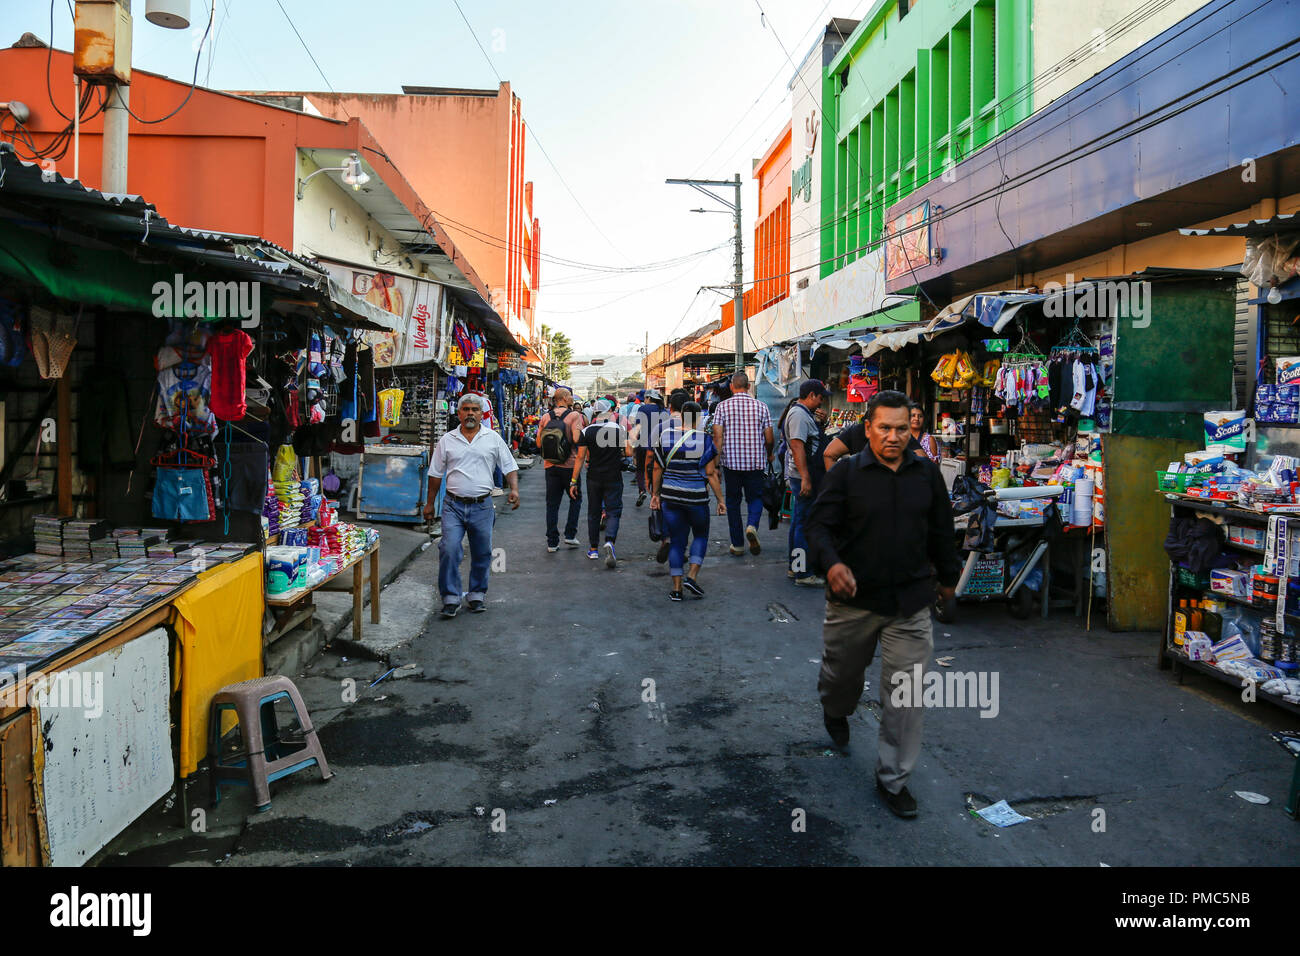 Busy street, San Salvador Stock Photo